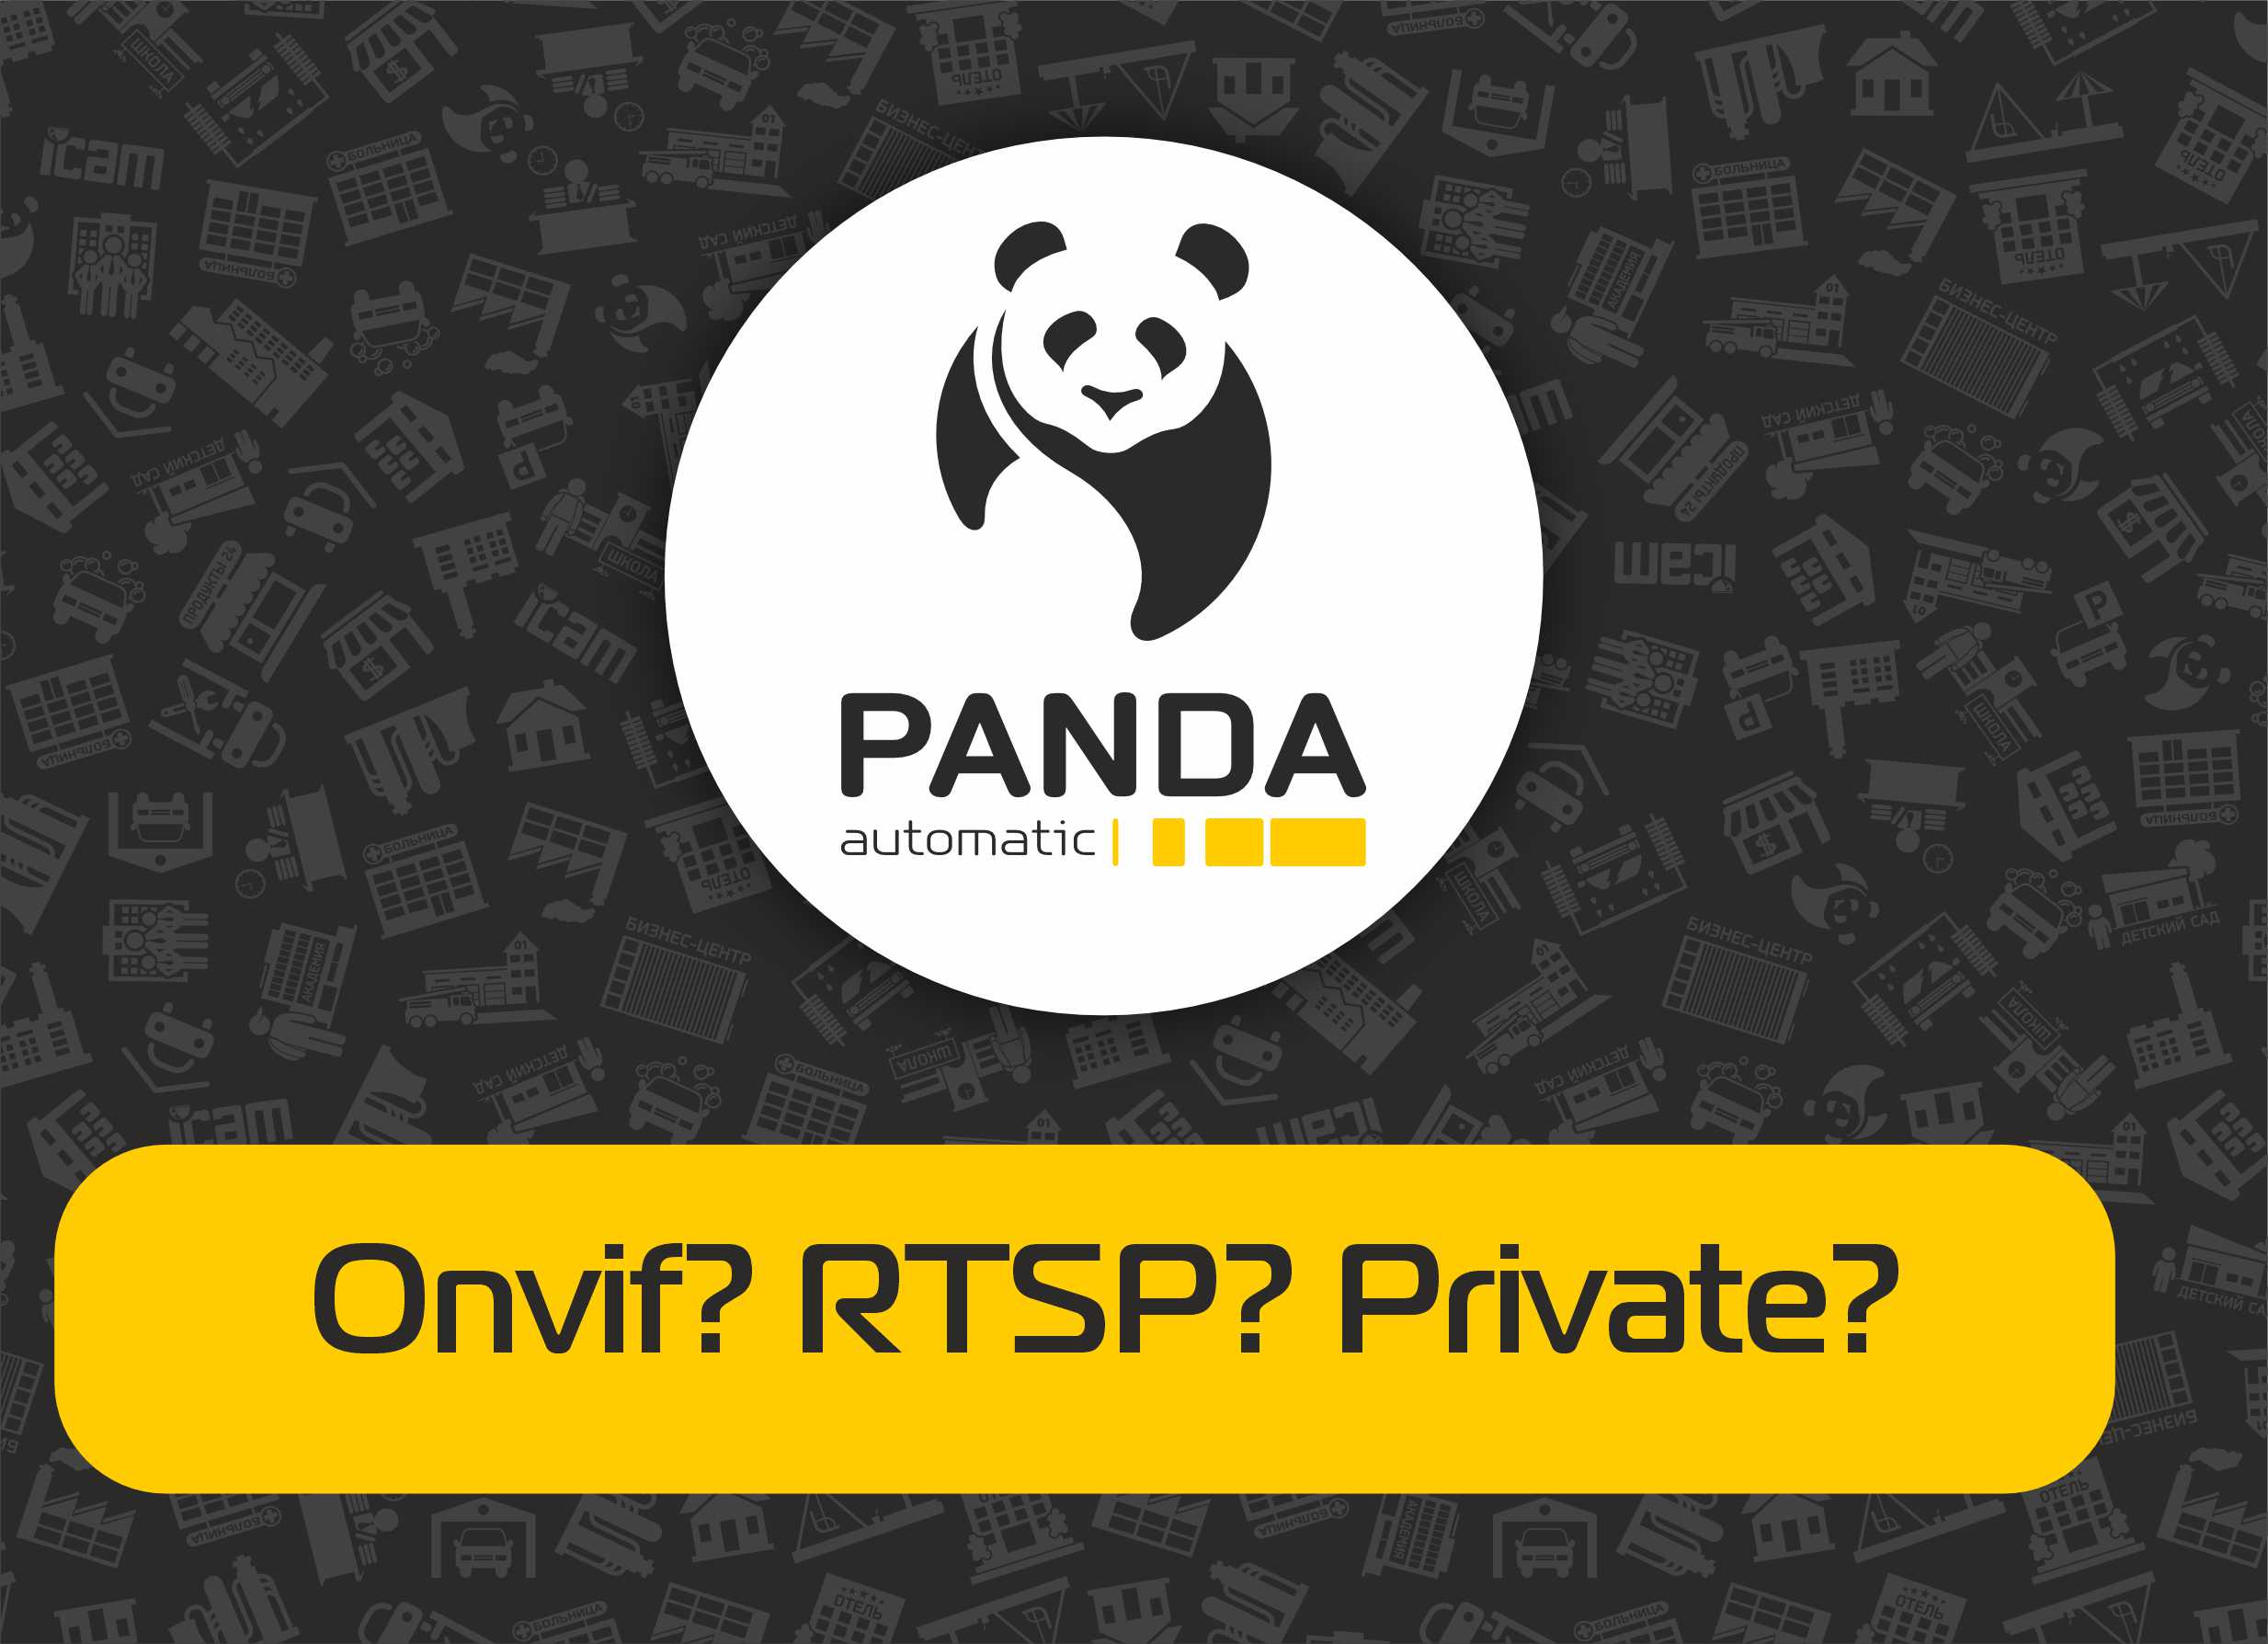 Как правильно выбрать протокол для подключения IP камер - Onvif, RTSP, Private.